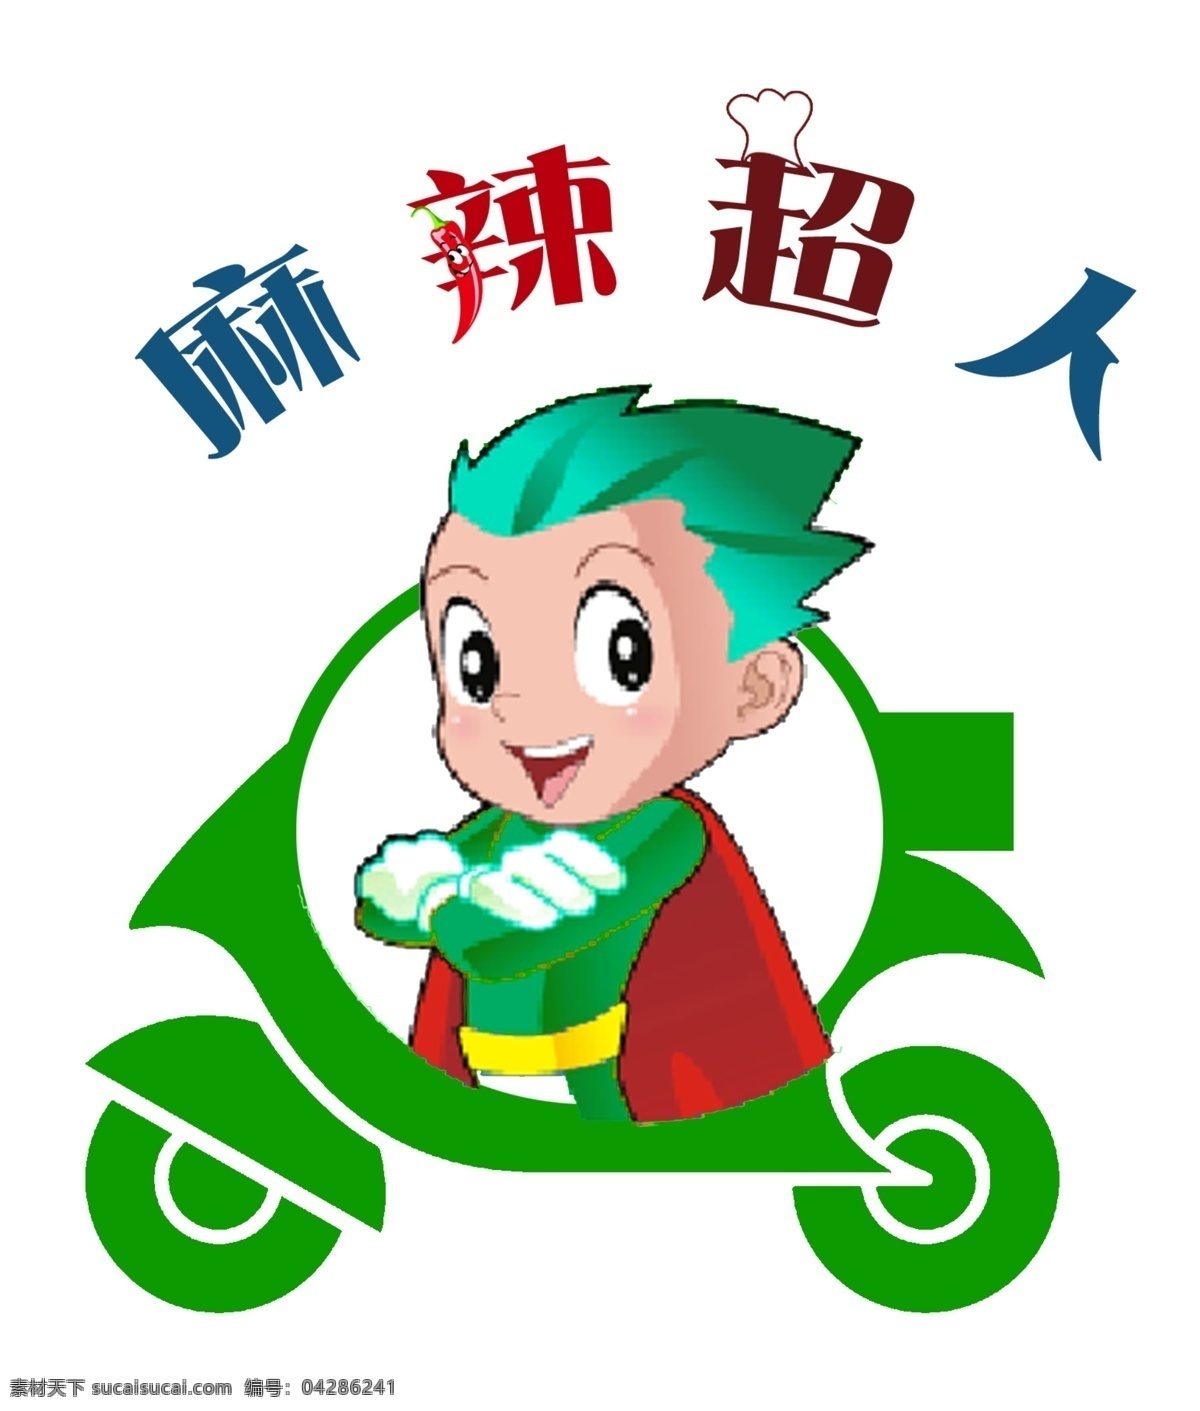 麻辣超人 logo 卡通人物 餐饮 快餐 综合类 白色